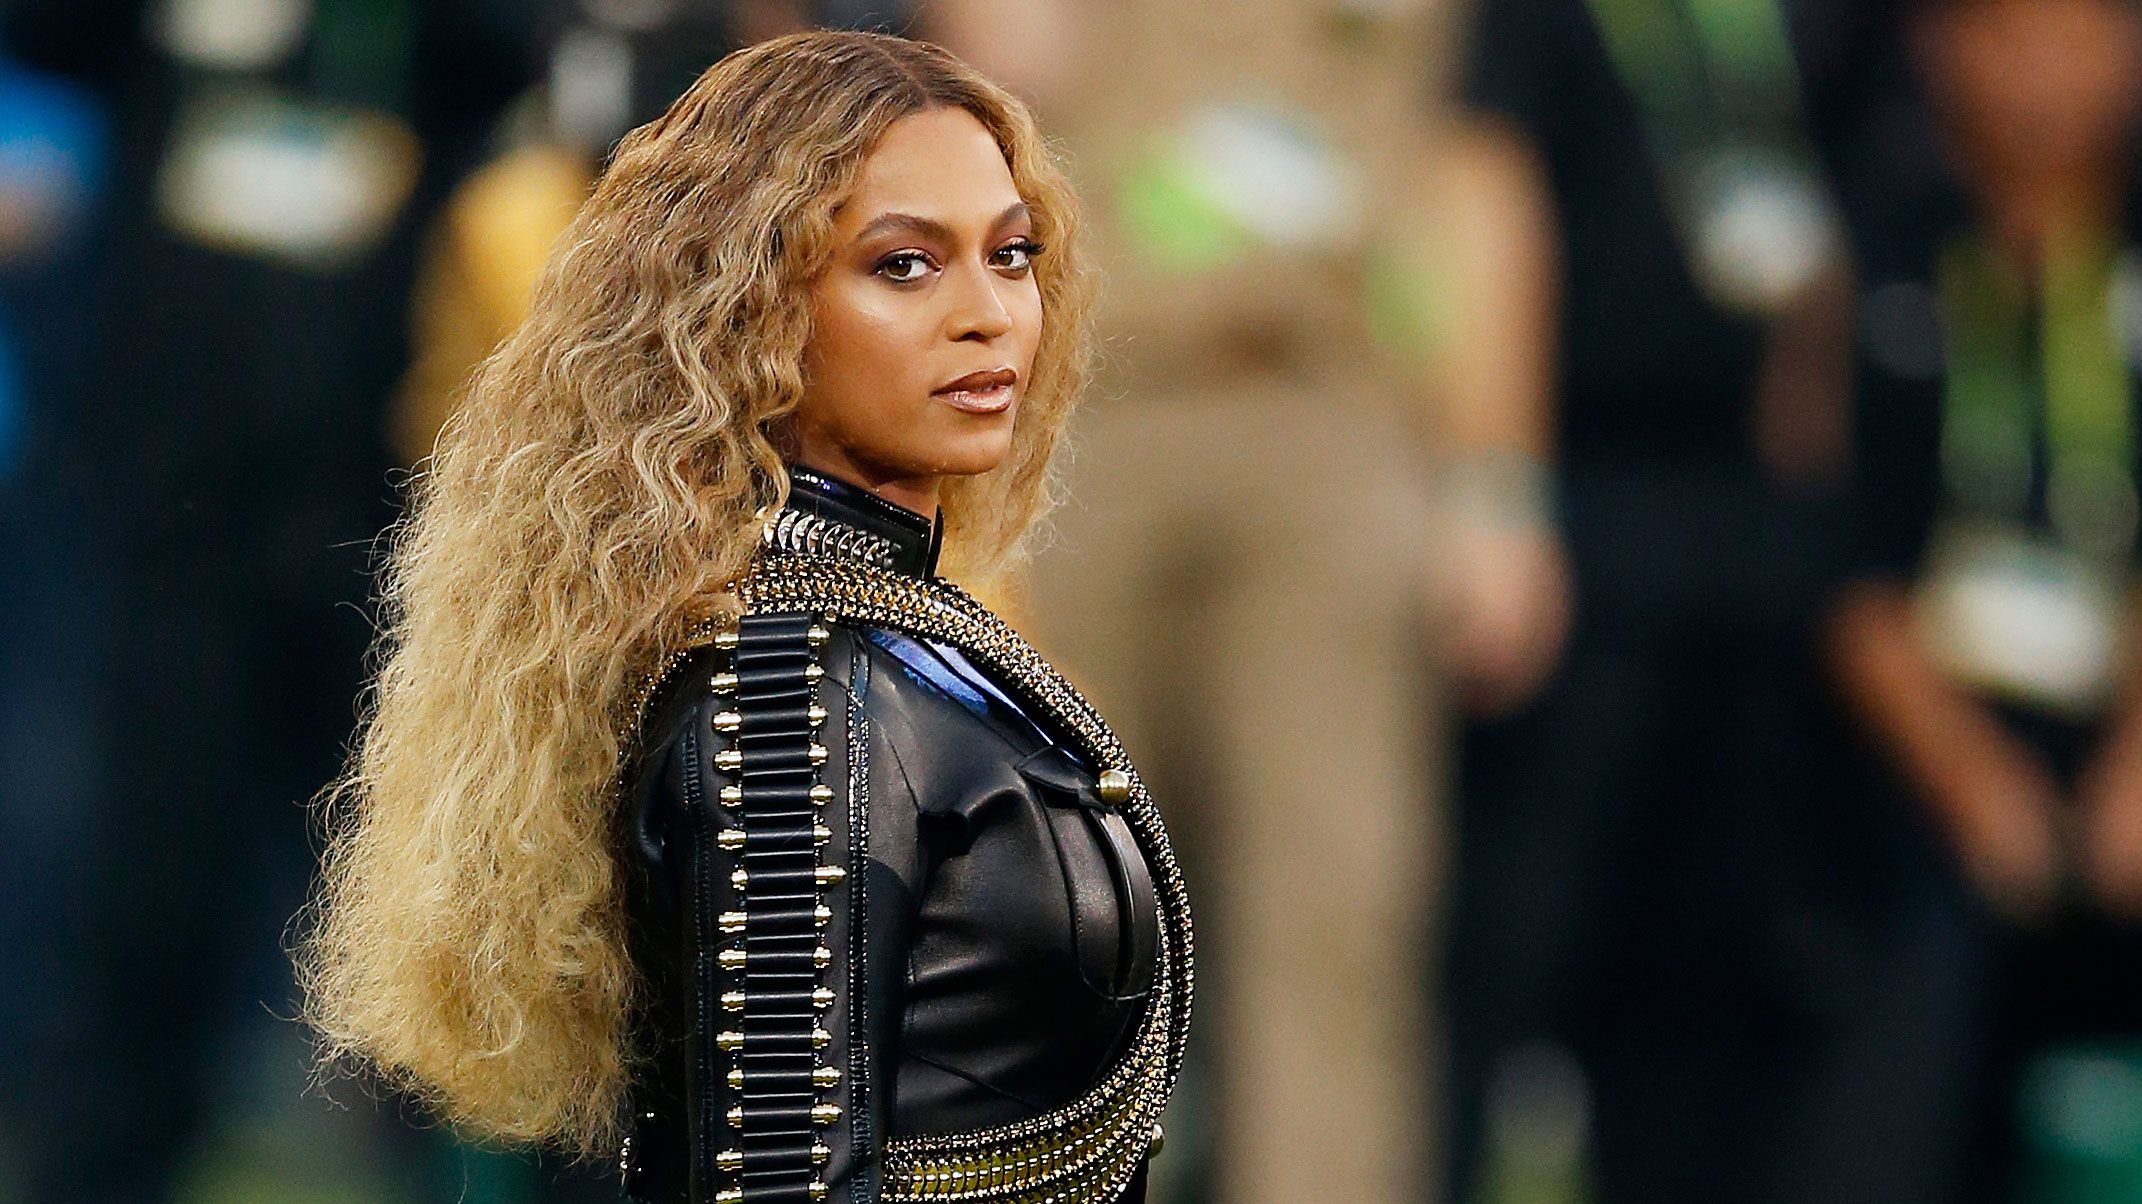 Beyonce's 'Lemonade' fuels rumors of cheating